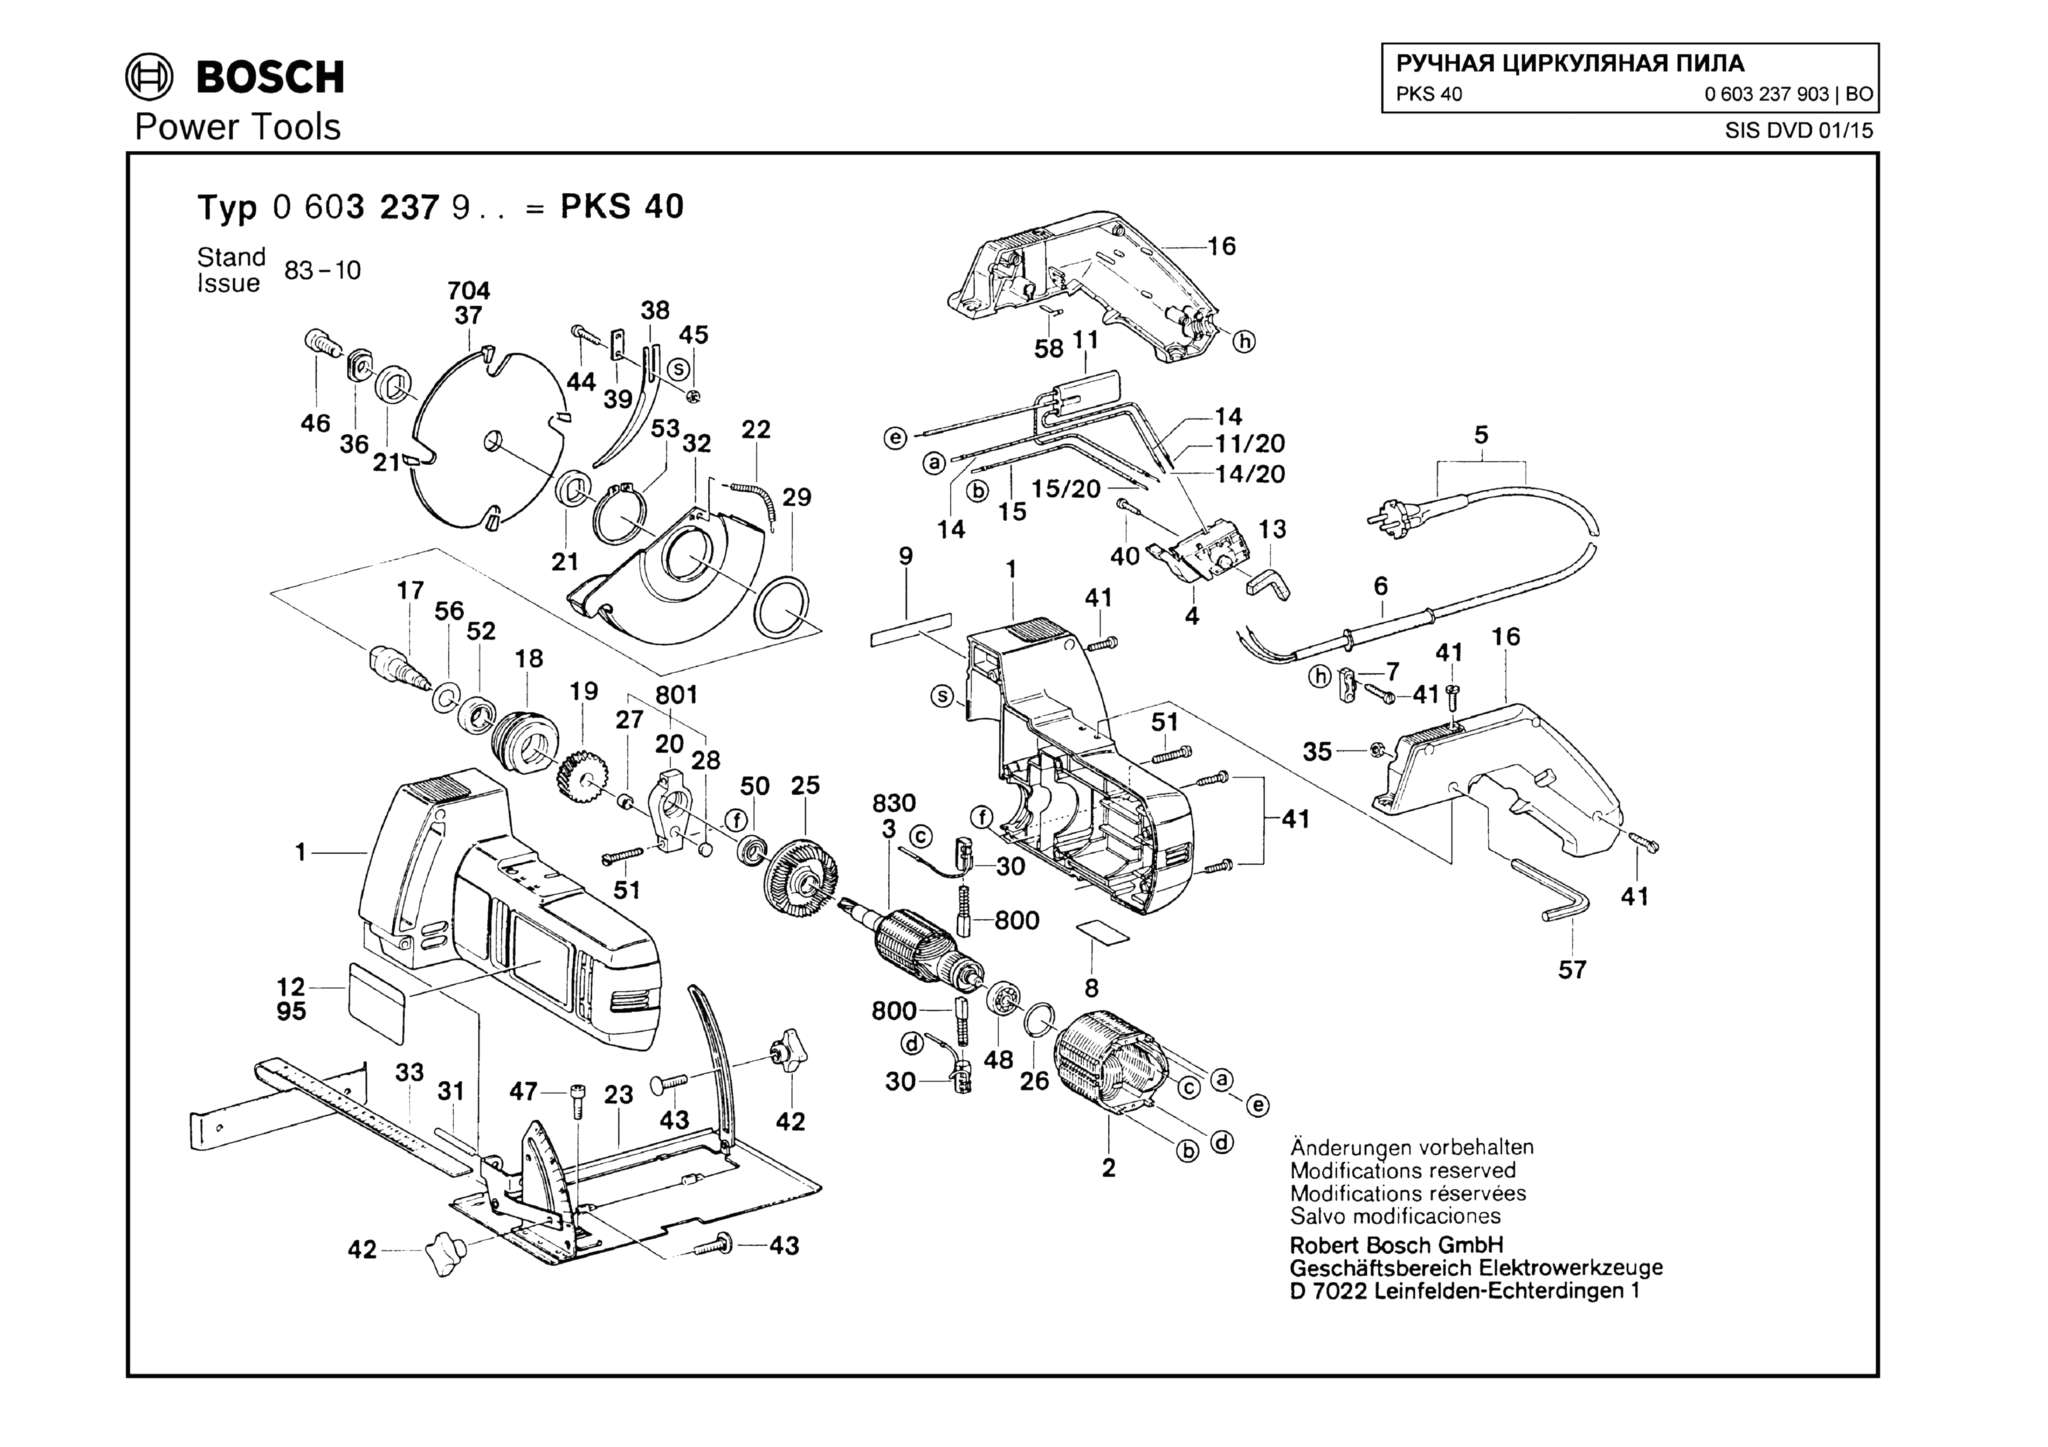 Запчасти, схема и деталировка Bosch PKS 40 (ТИП 0603237903)